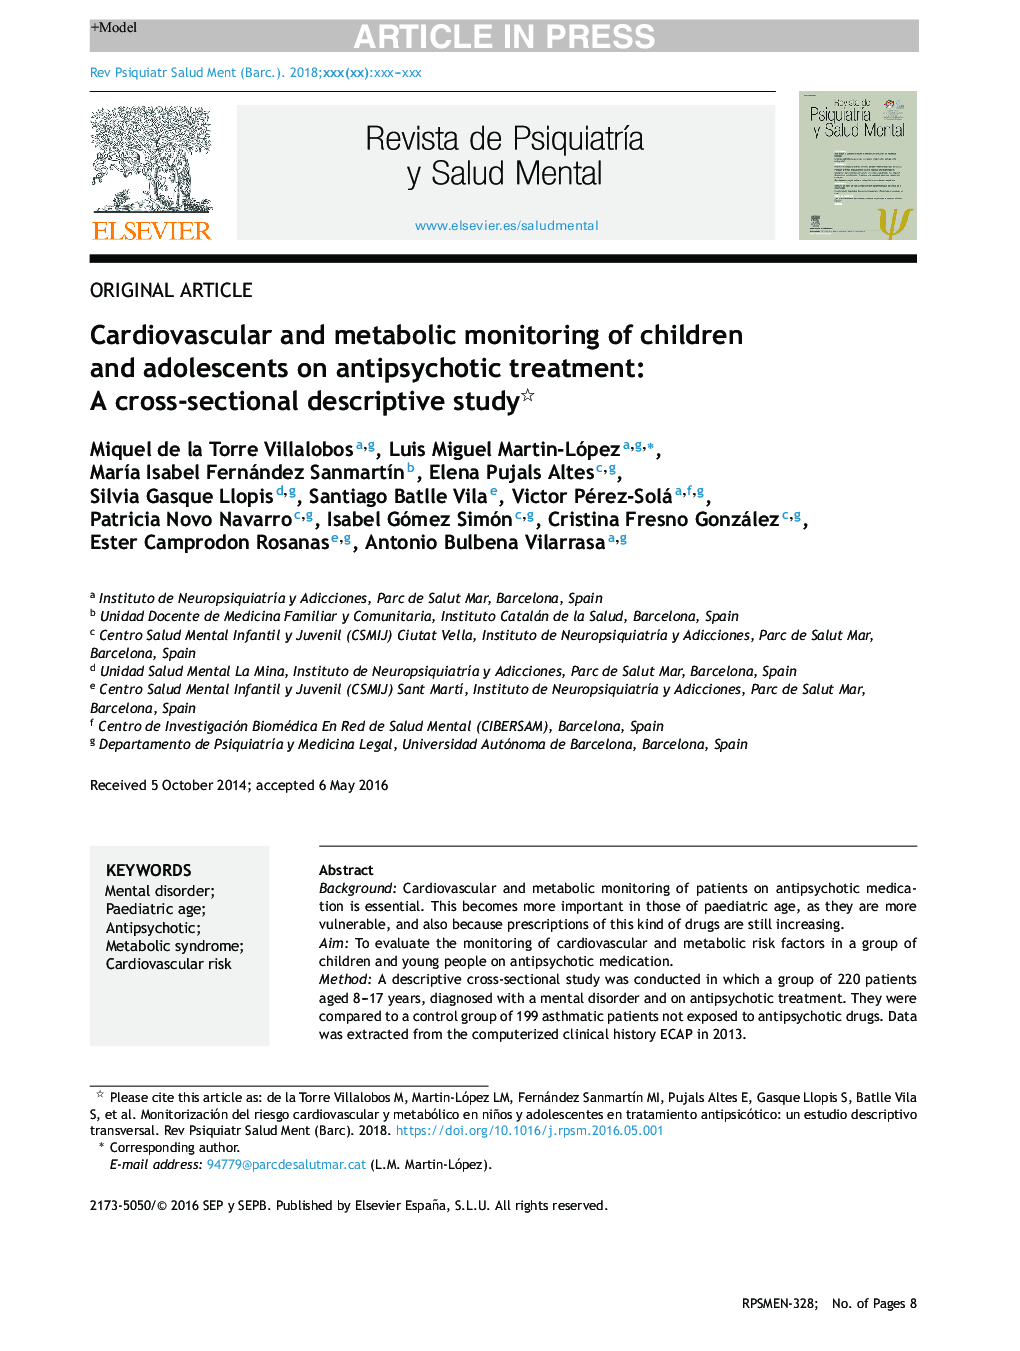 نظارت بر قلب و عروق و متابولیسم کودکان و نوجوانان در مورد درمان ضد پیری: یک مطالعه توصیفی مقطعی 